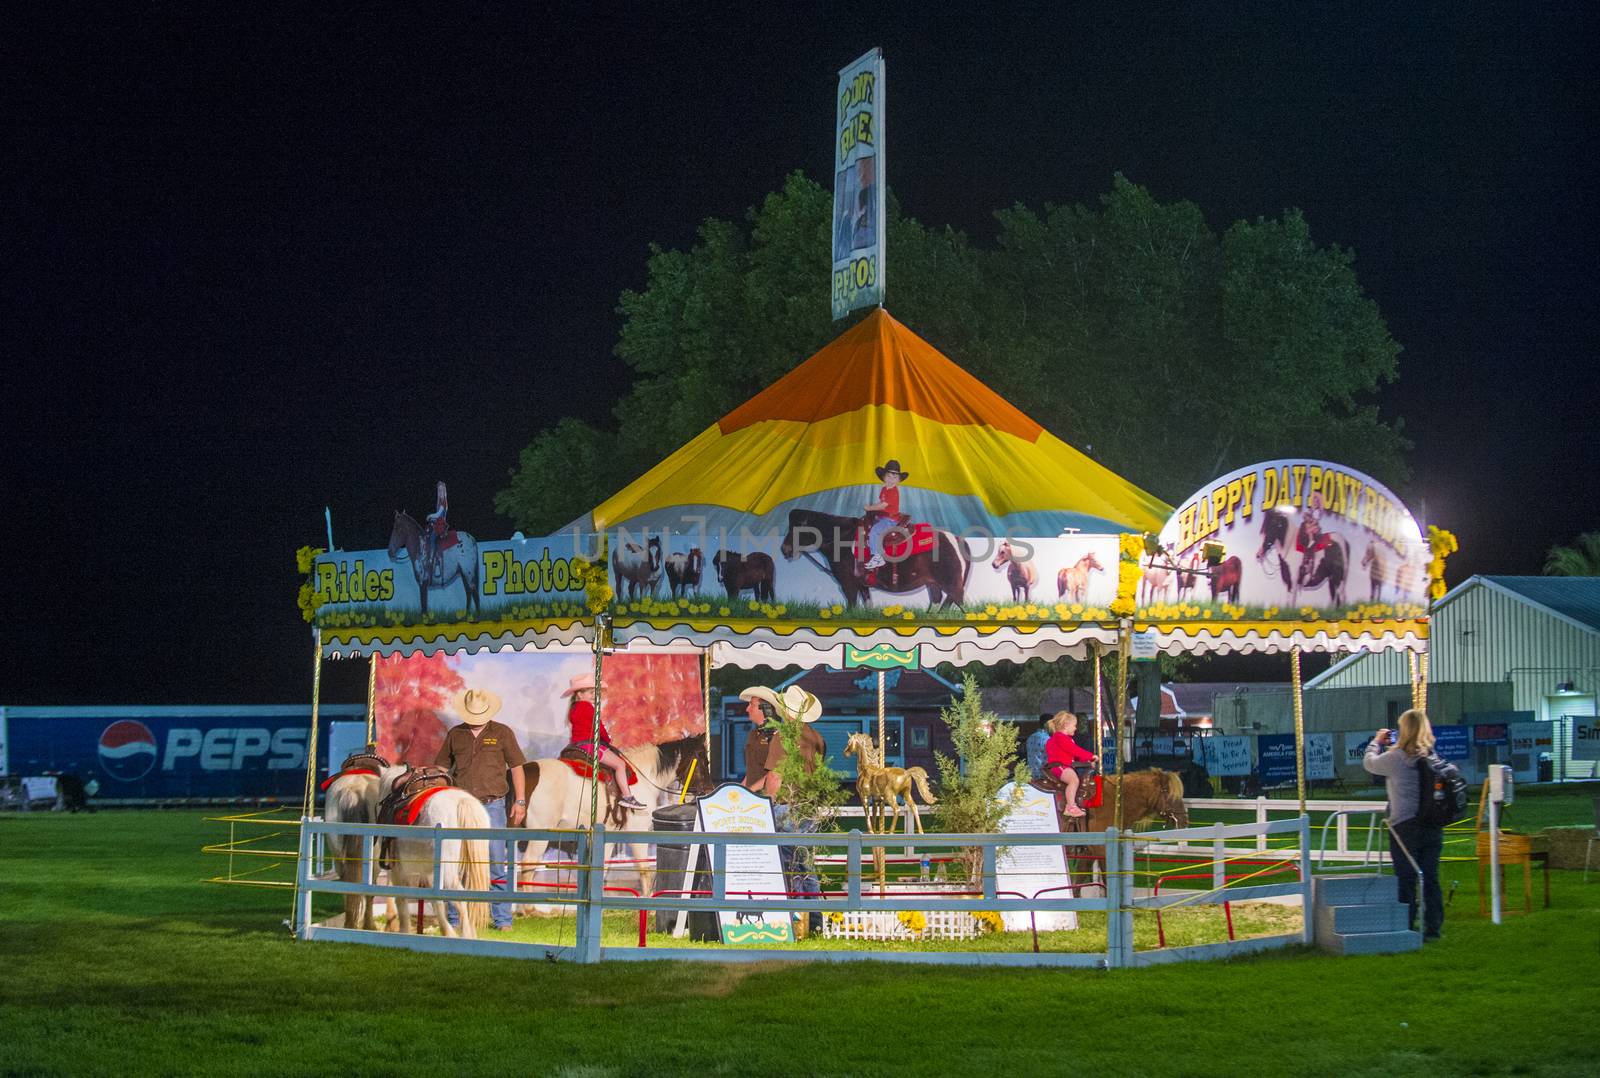 The Clark County Fair and Rodeo  by kobby_dagan